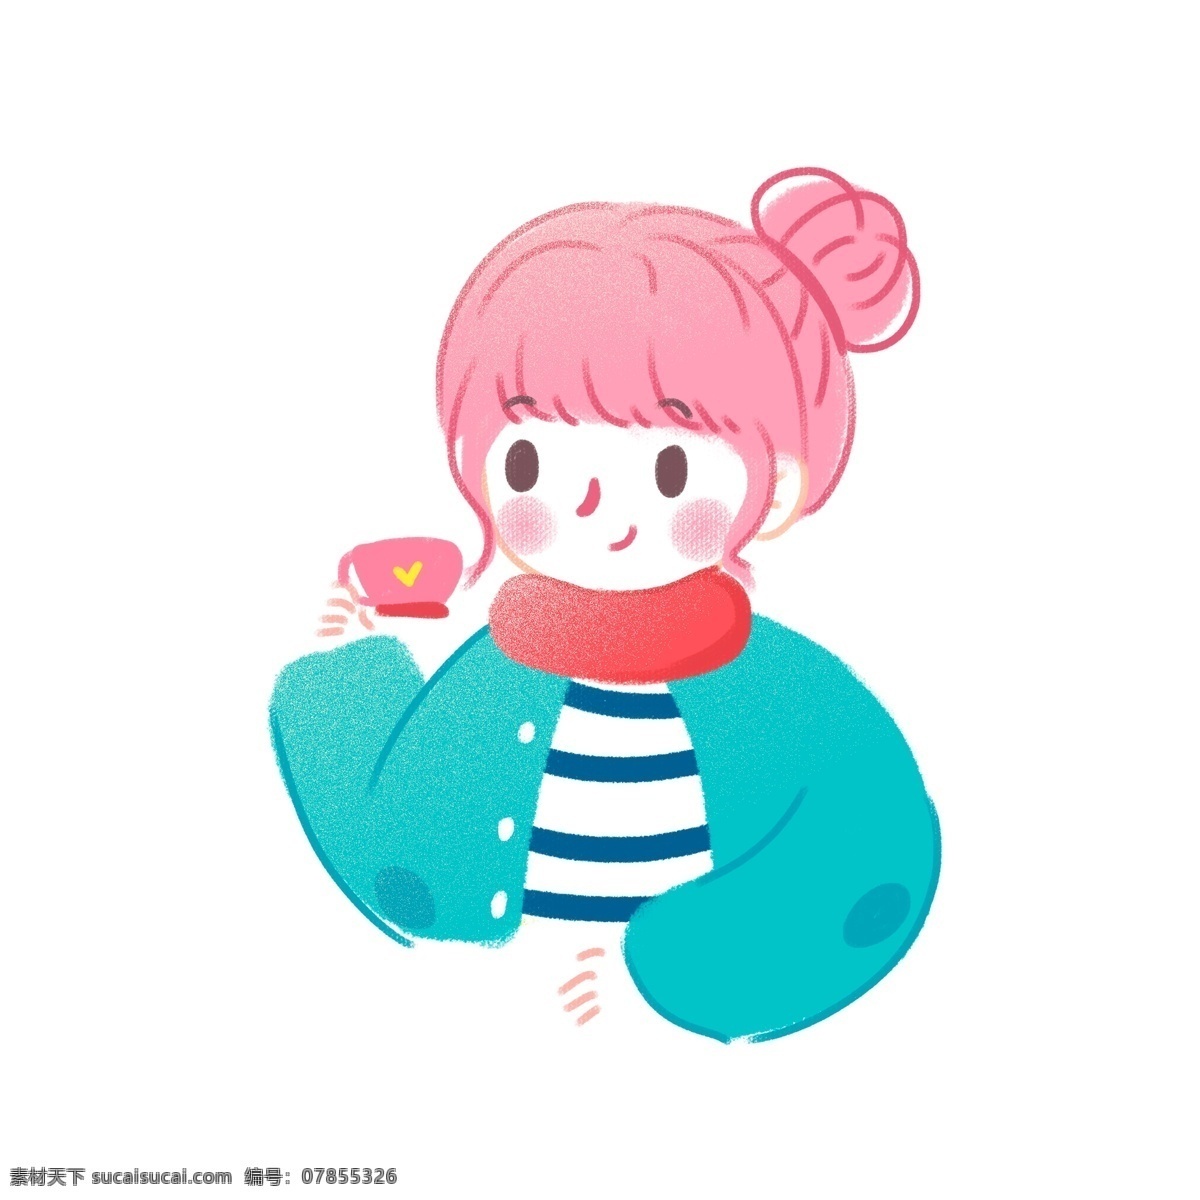 韩国 卡通 可爱 喝 咖啡 小女孩 商用 元素 女孩 插画 喝咖啡 丸子头 小女生 少女 人物设计